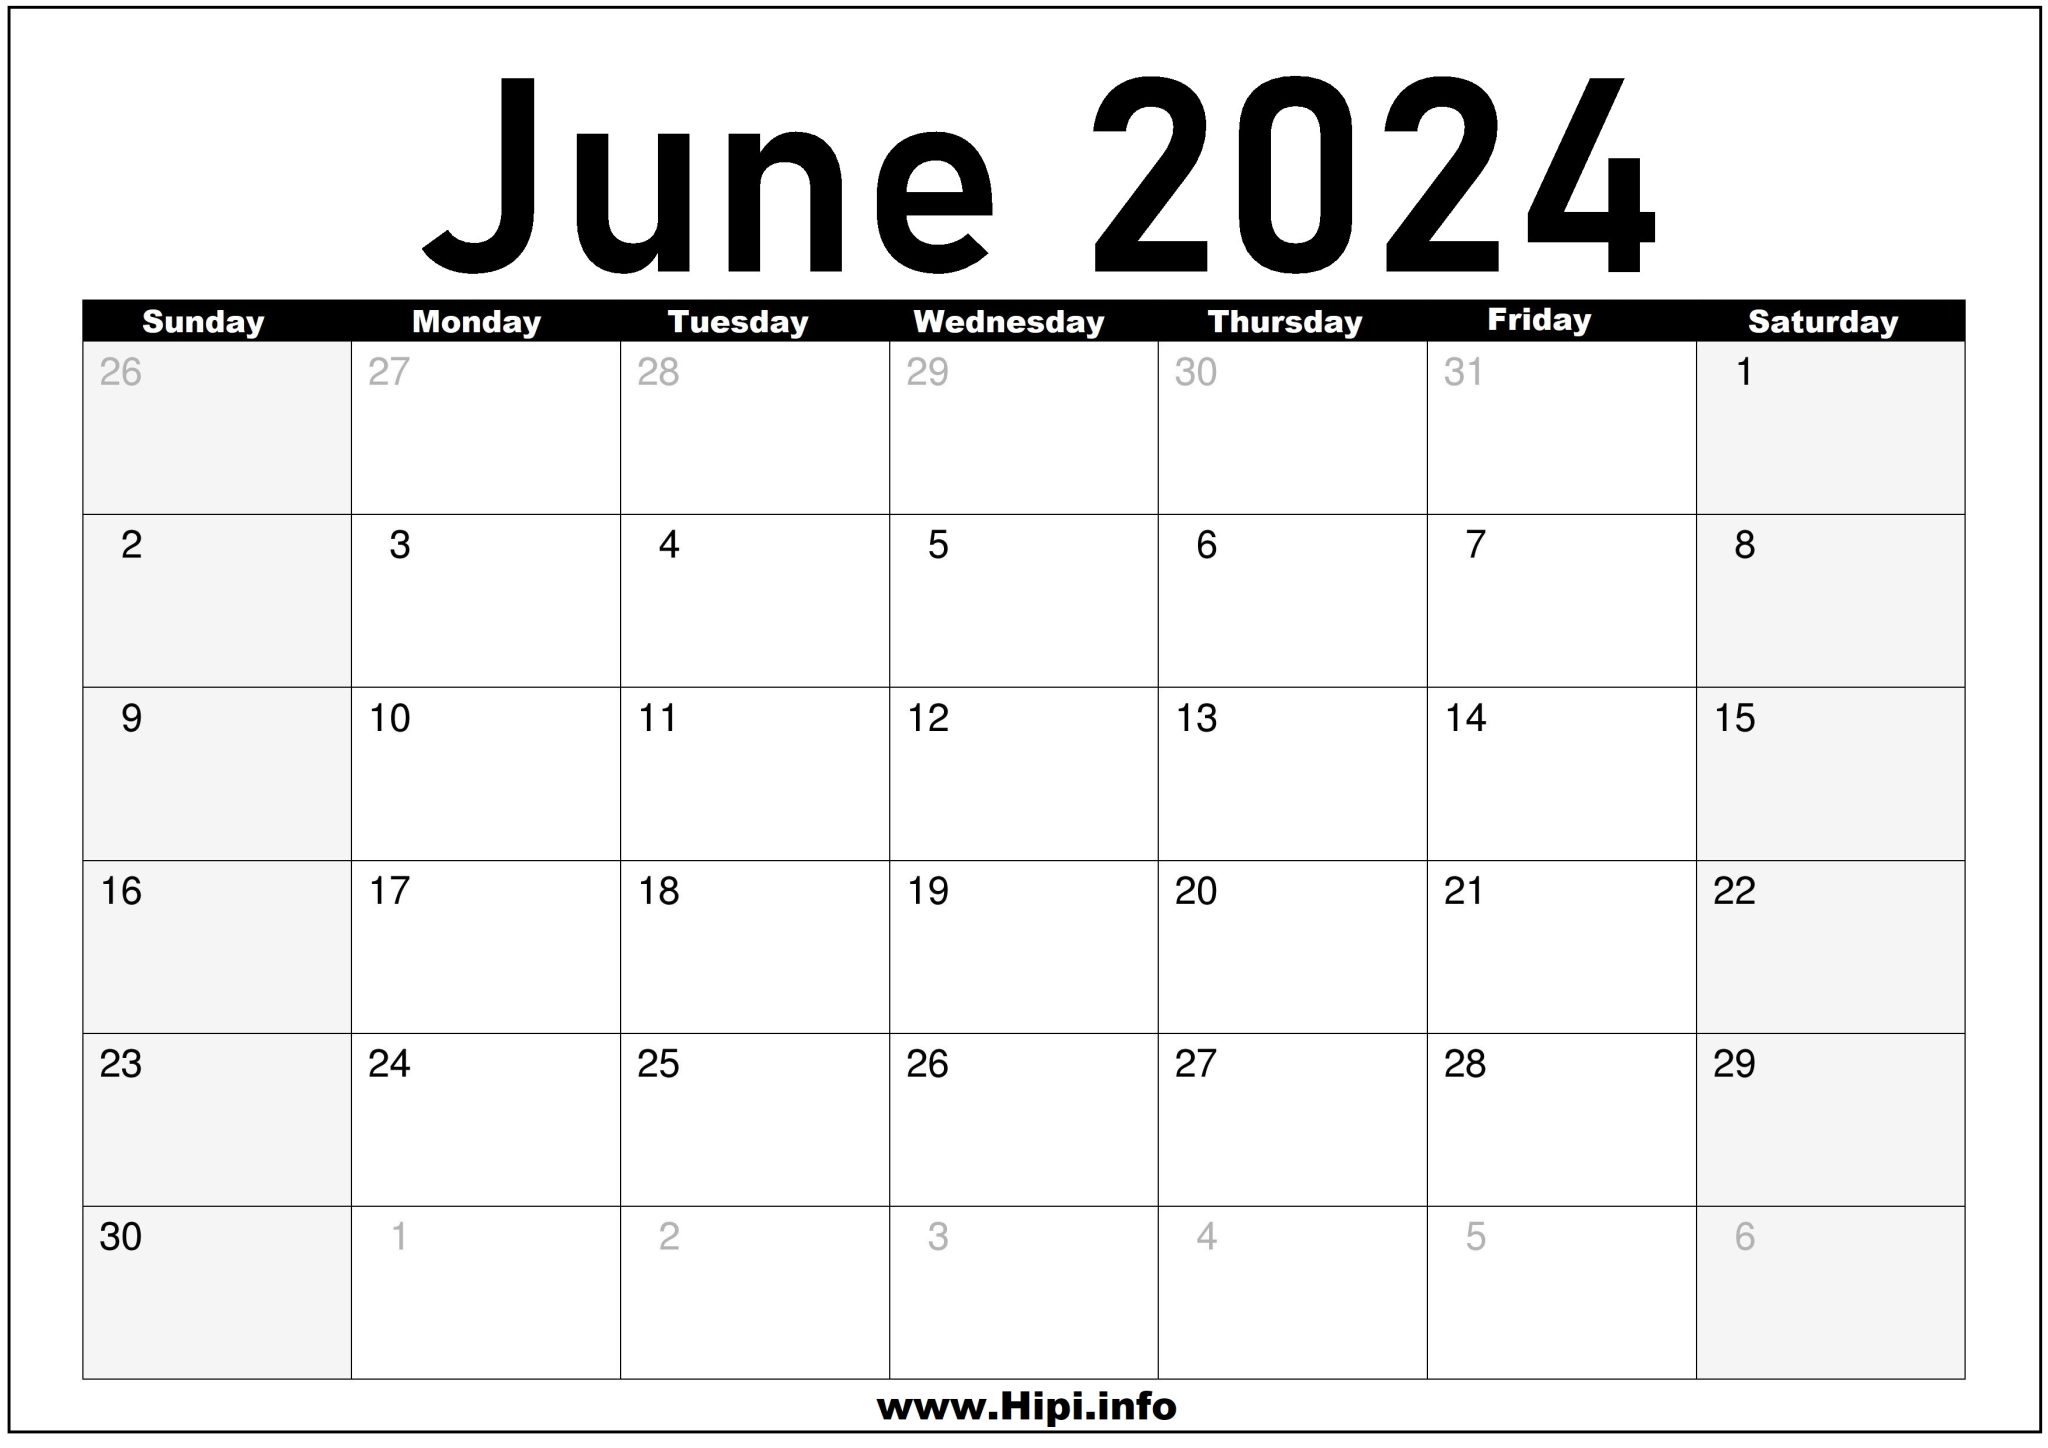 June 2024 Calendar Festival New Ultimate Awasome Review of Calendar